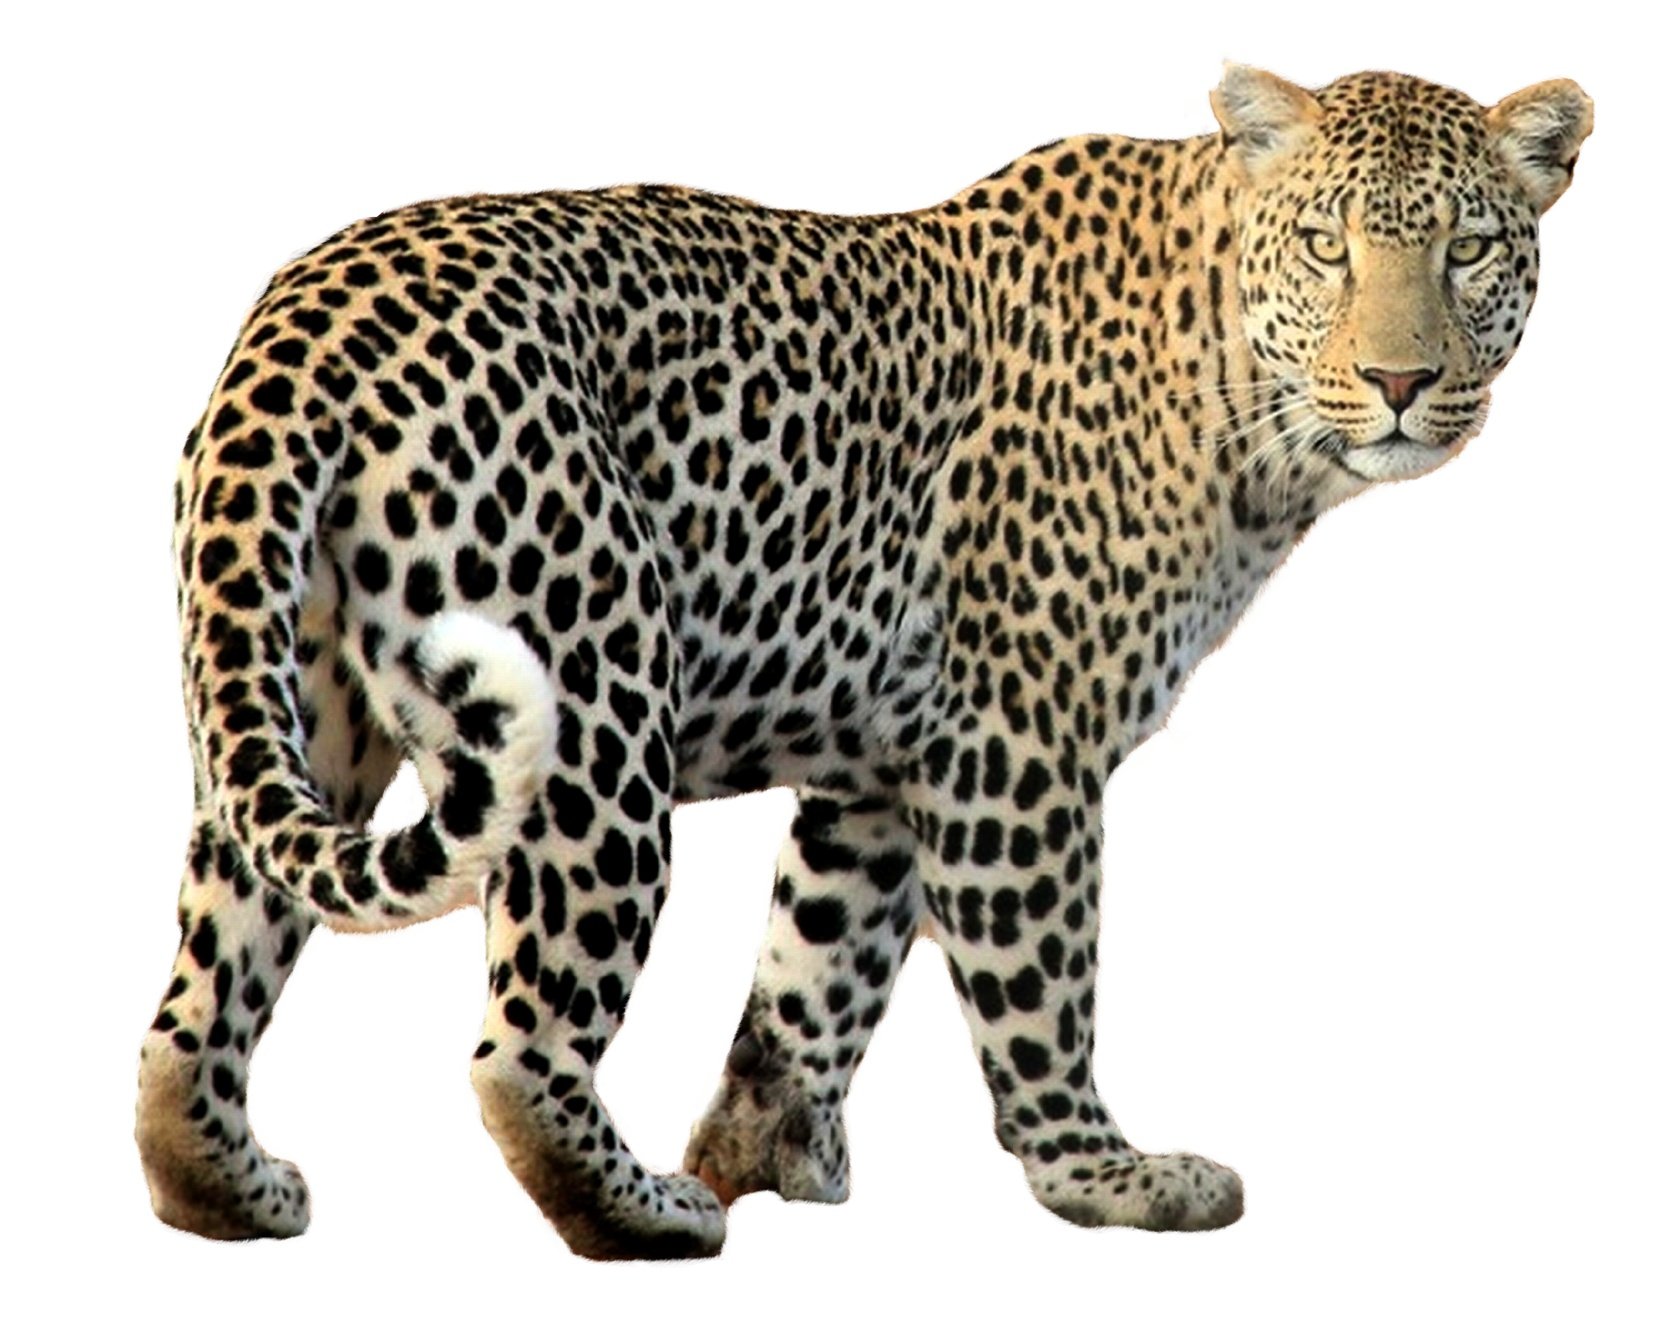 leopard image sanskrit